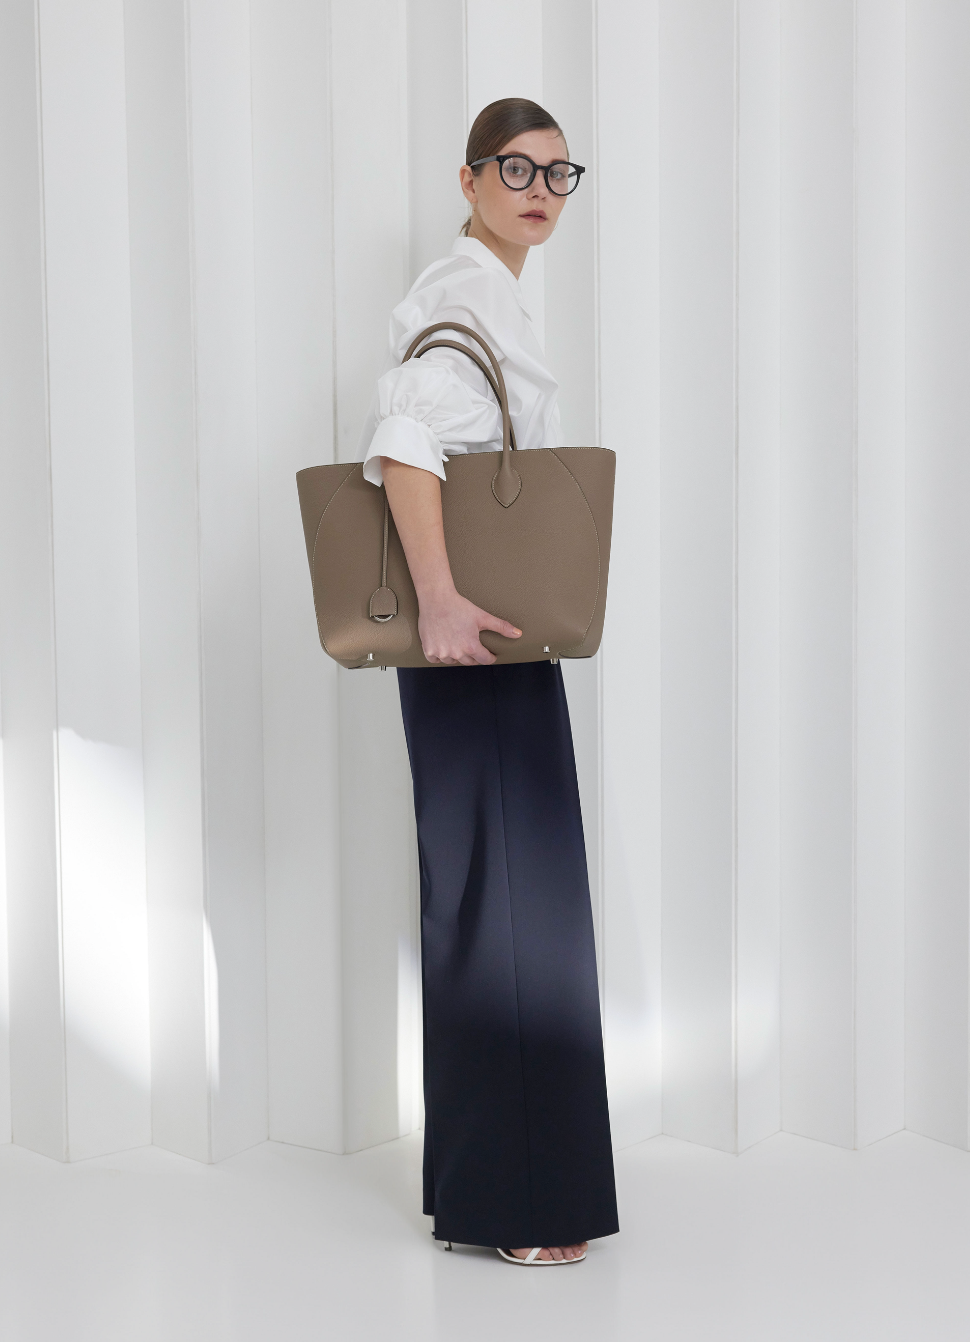 Une femme d'affaires porte le sac en cuir idéal pour la vie quotidienne au bureau